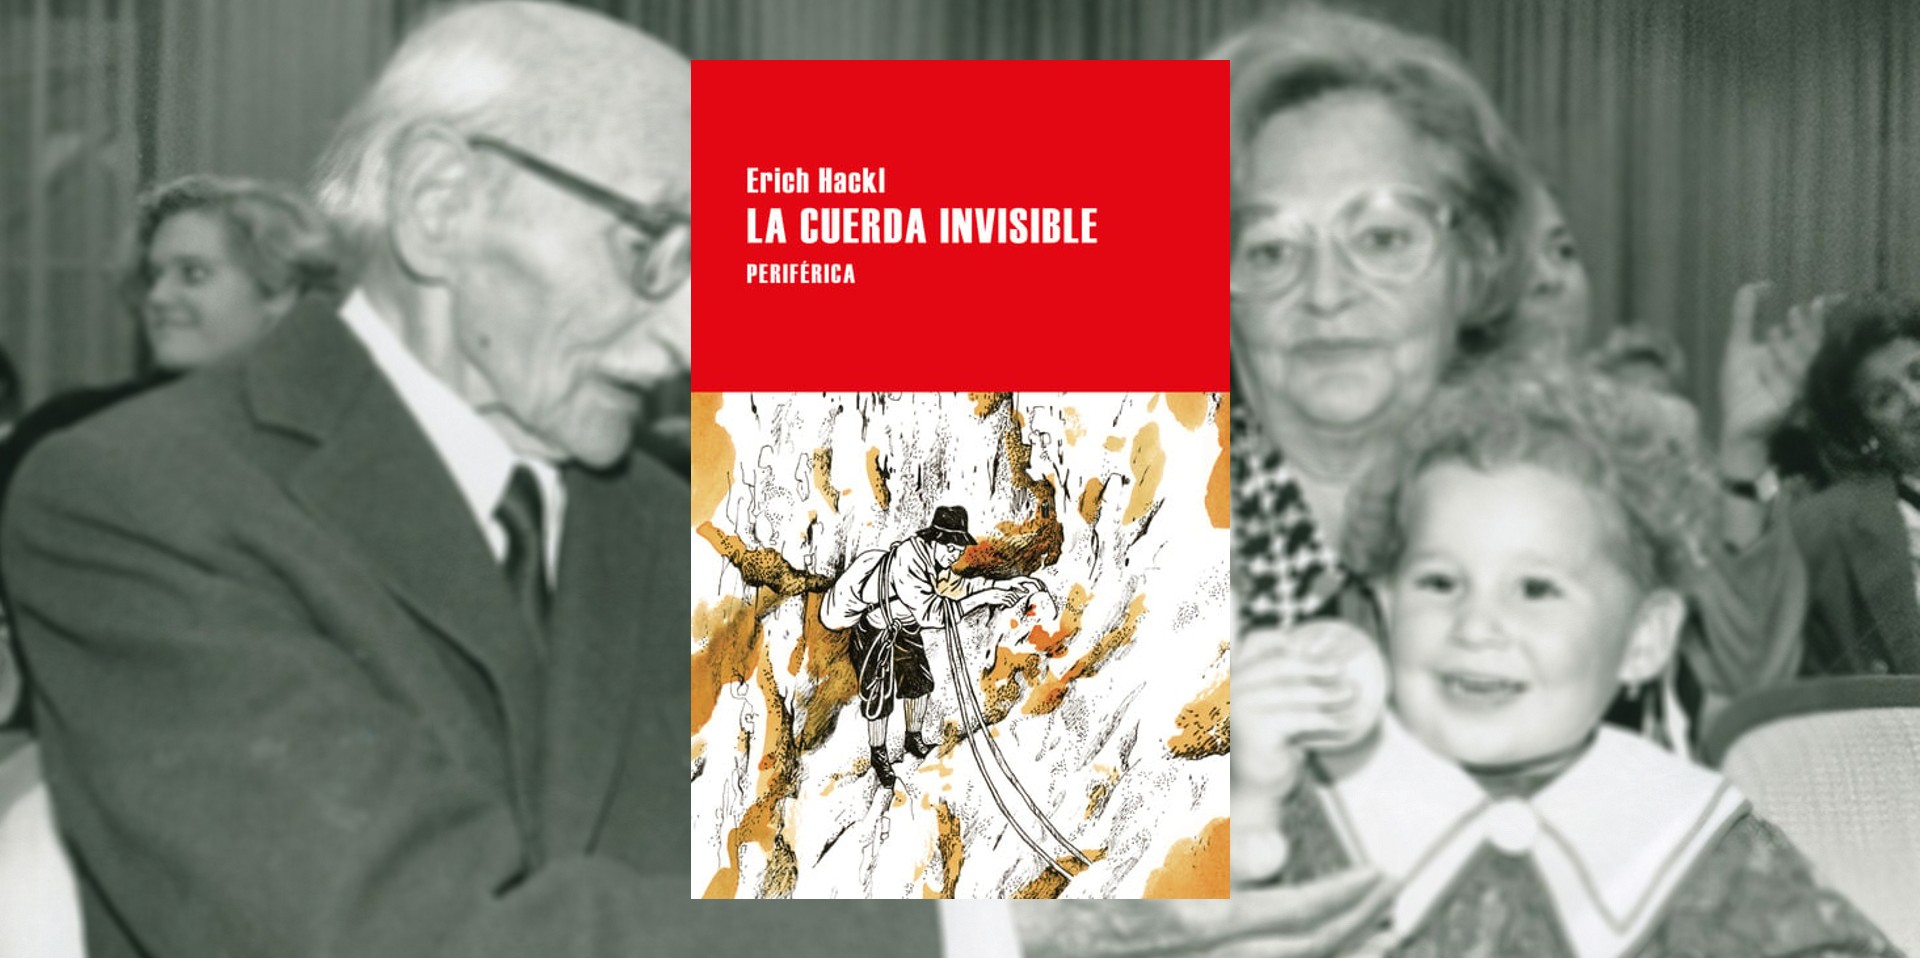 La vida discreta de Reinhold Duschka en “La cuerda invisible”, una de las novelas más recientes de Erich Hackl